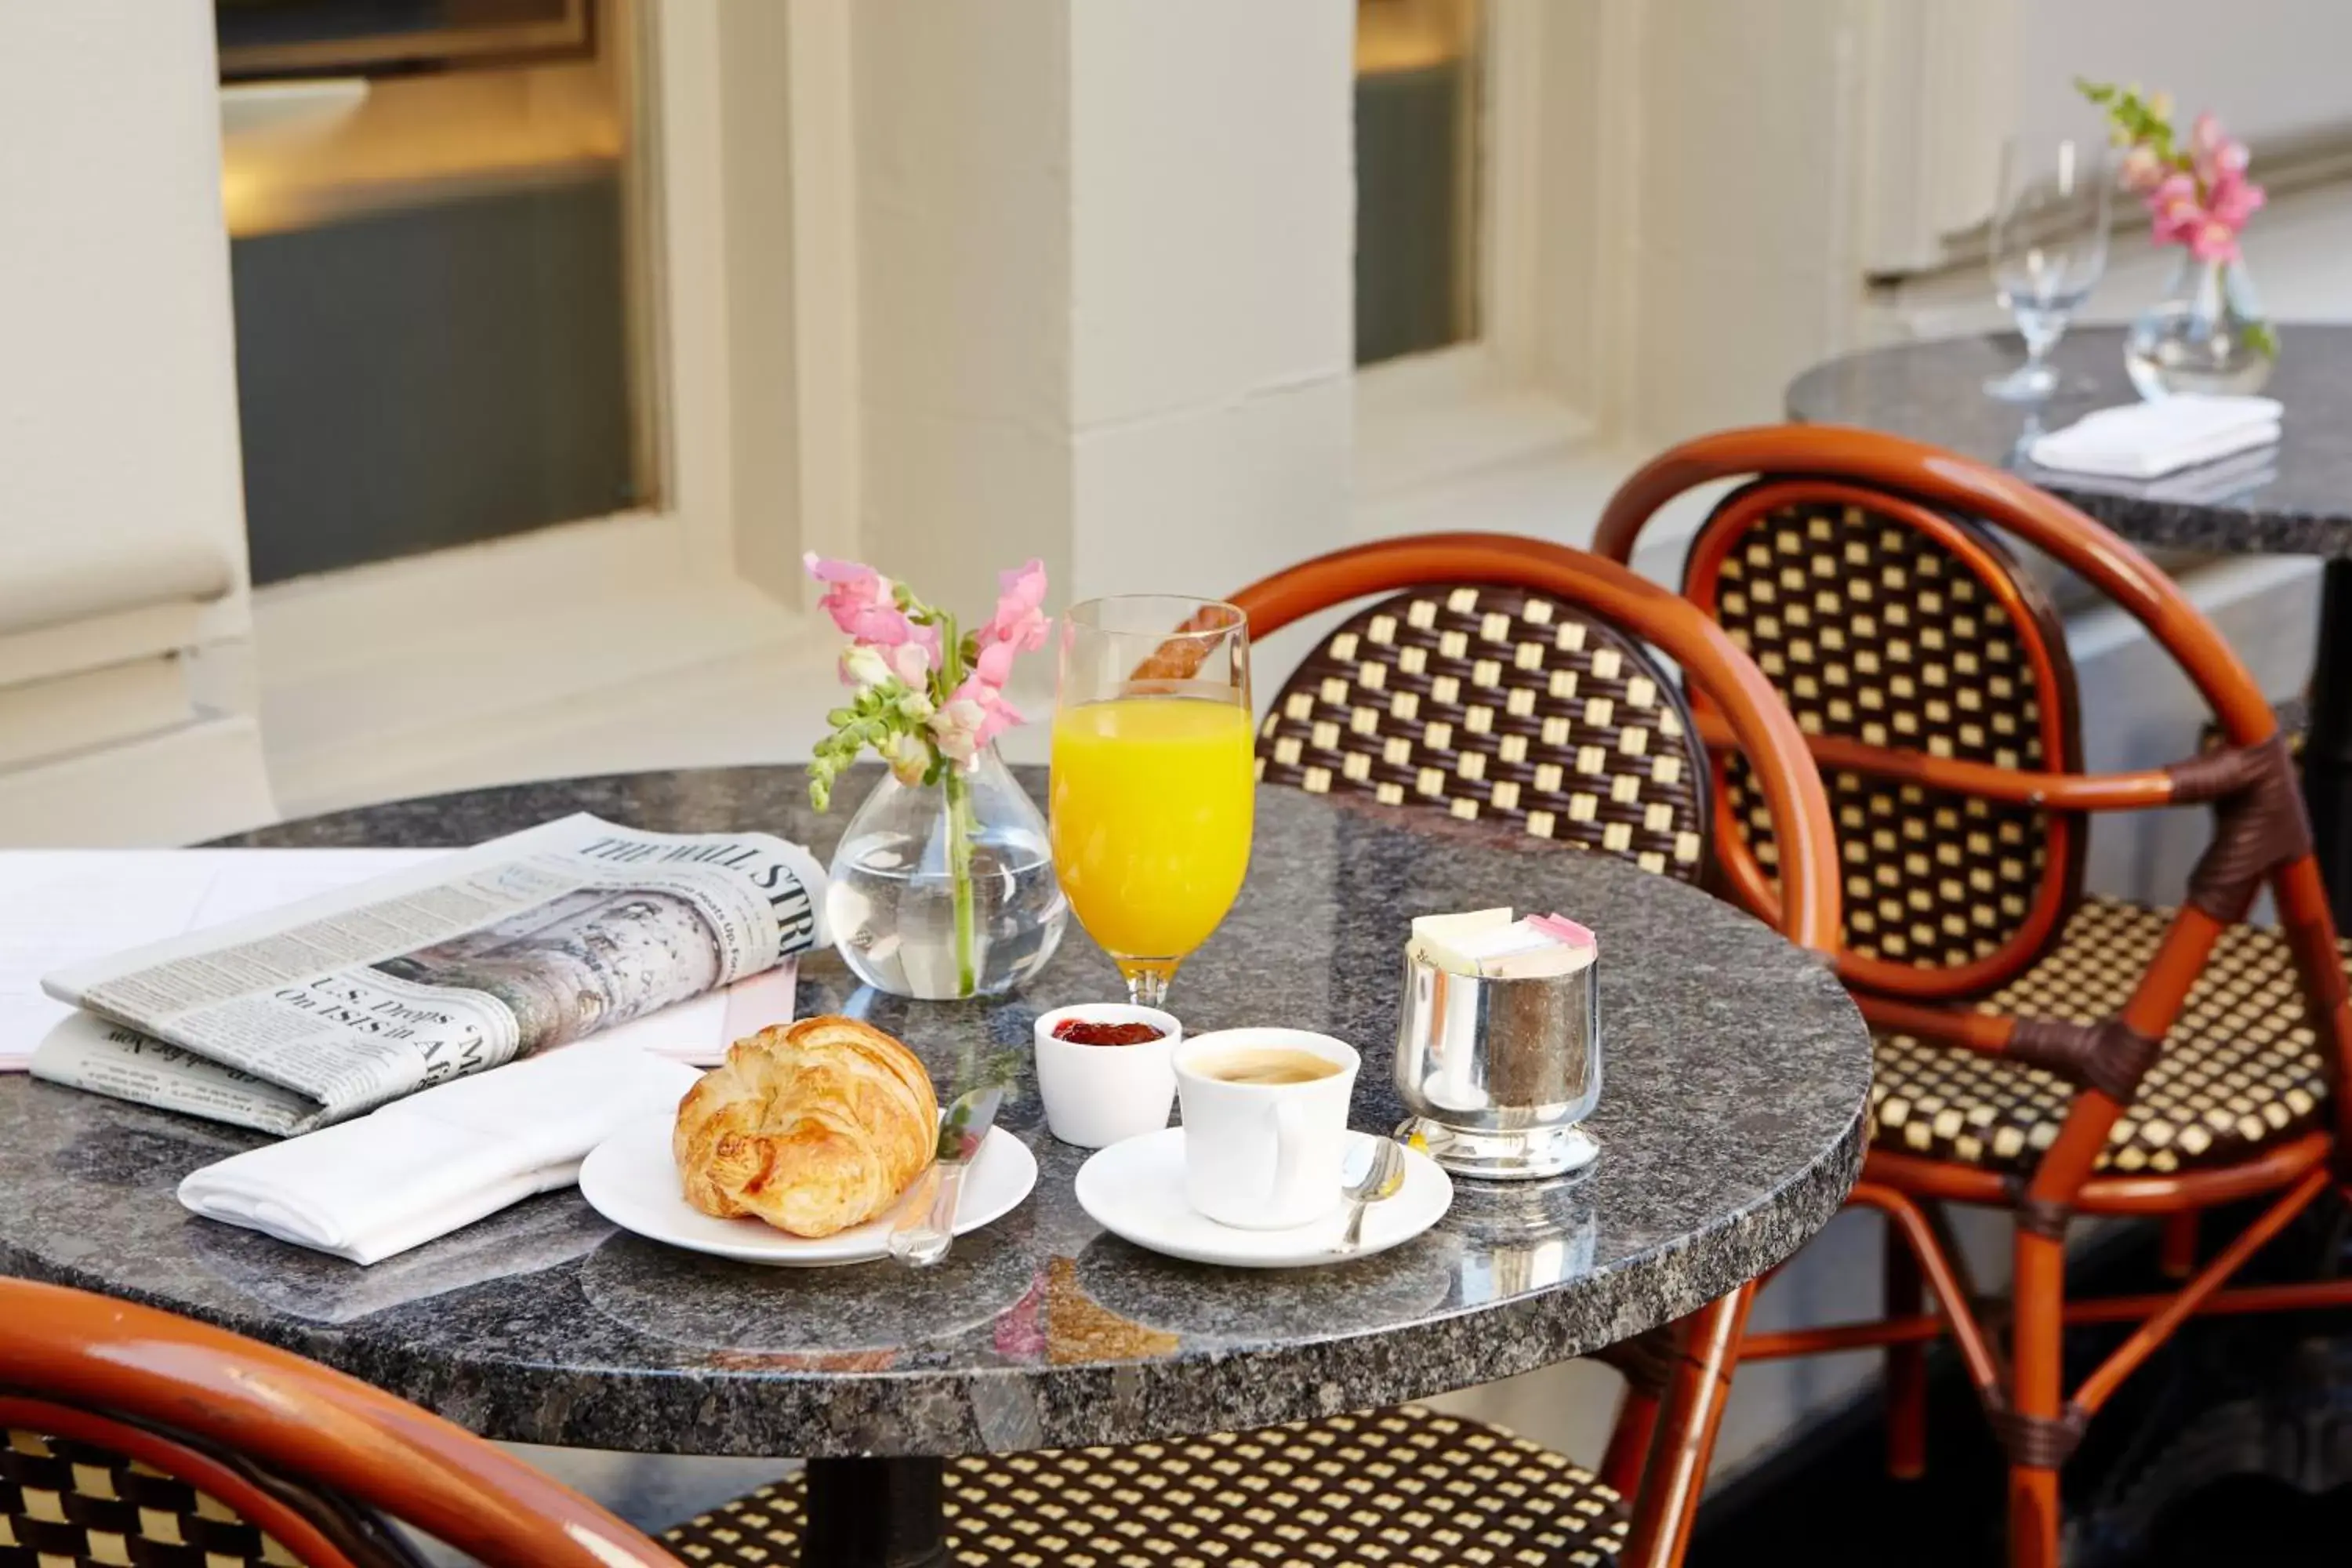 Breakfast in The Pierre, A Taj Hotel, New York